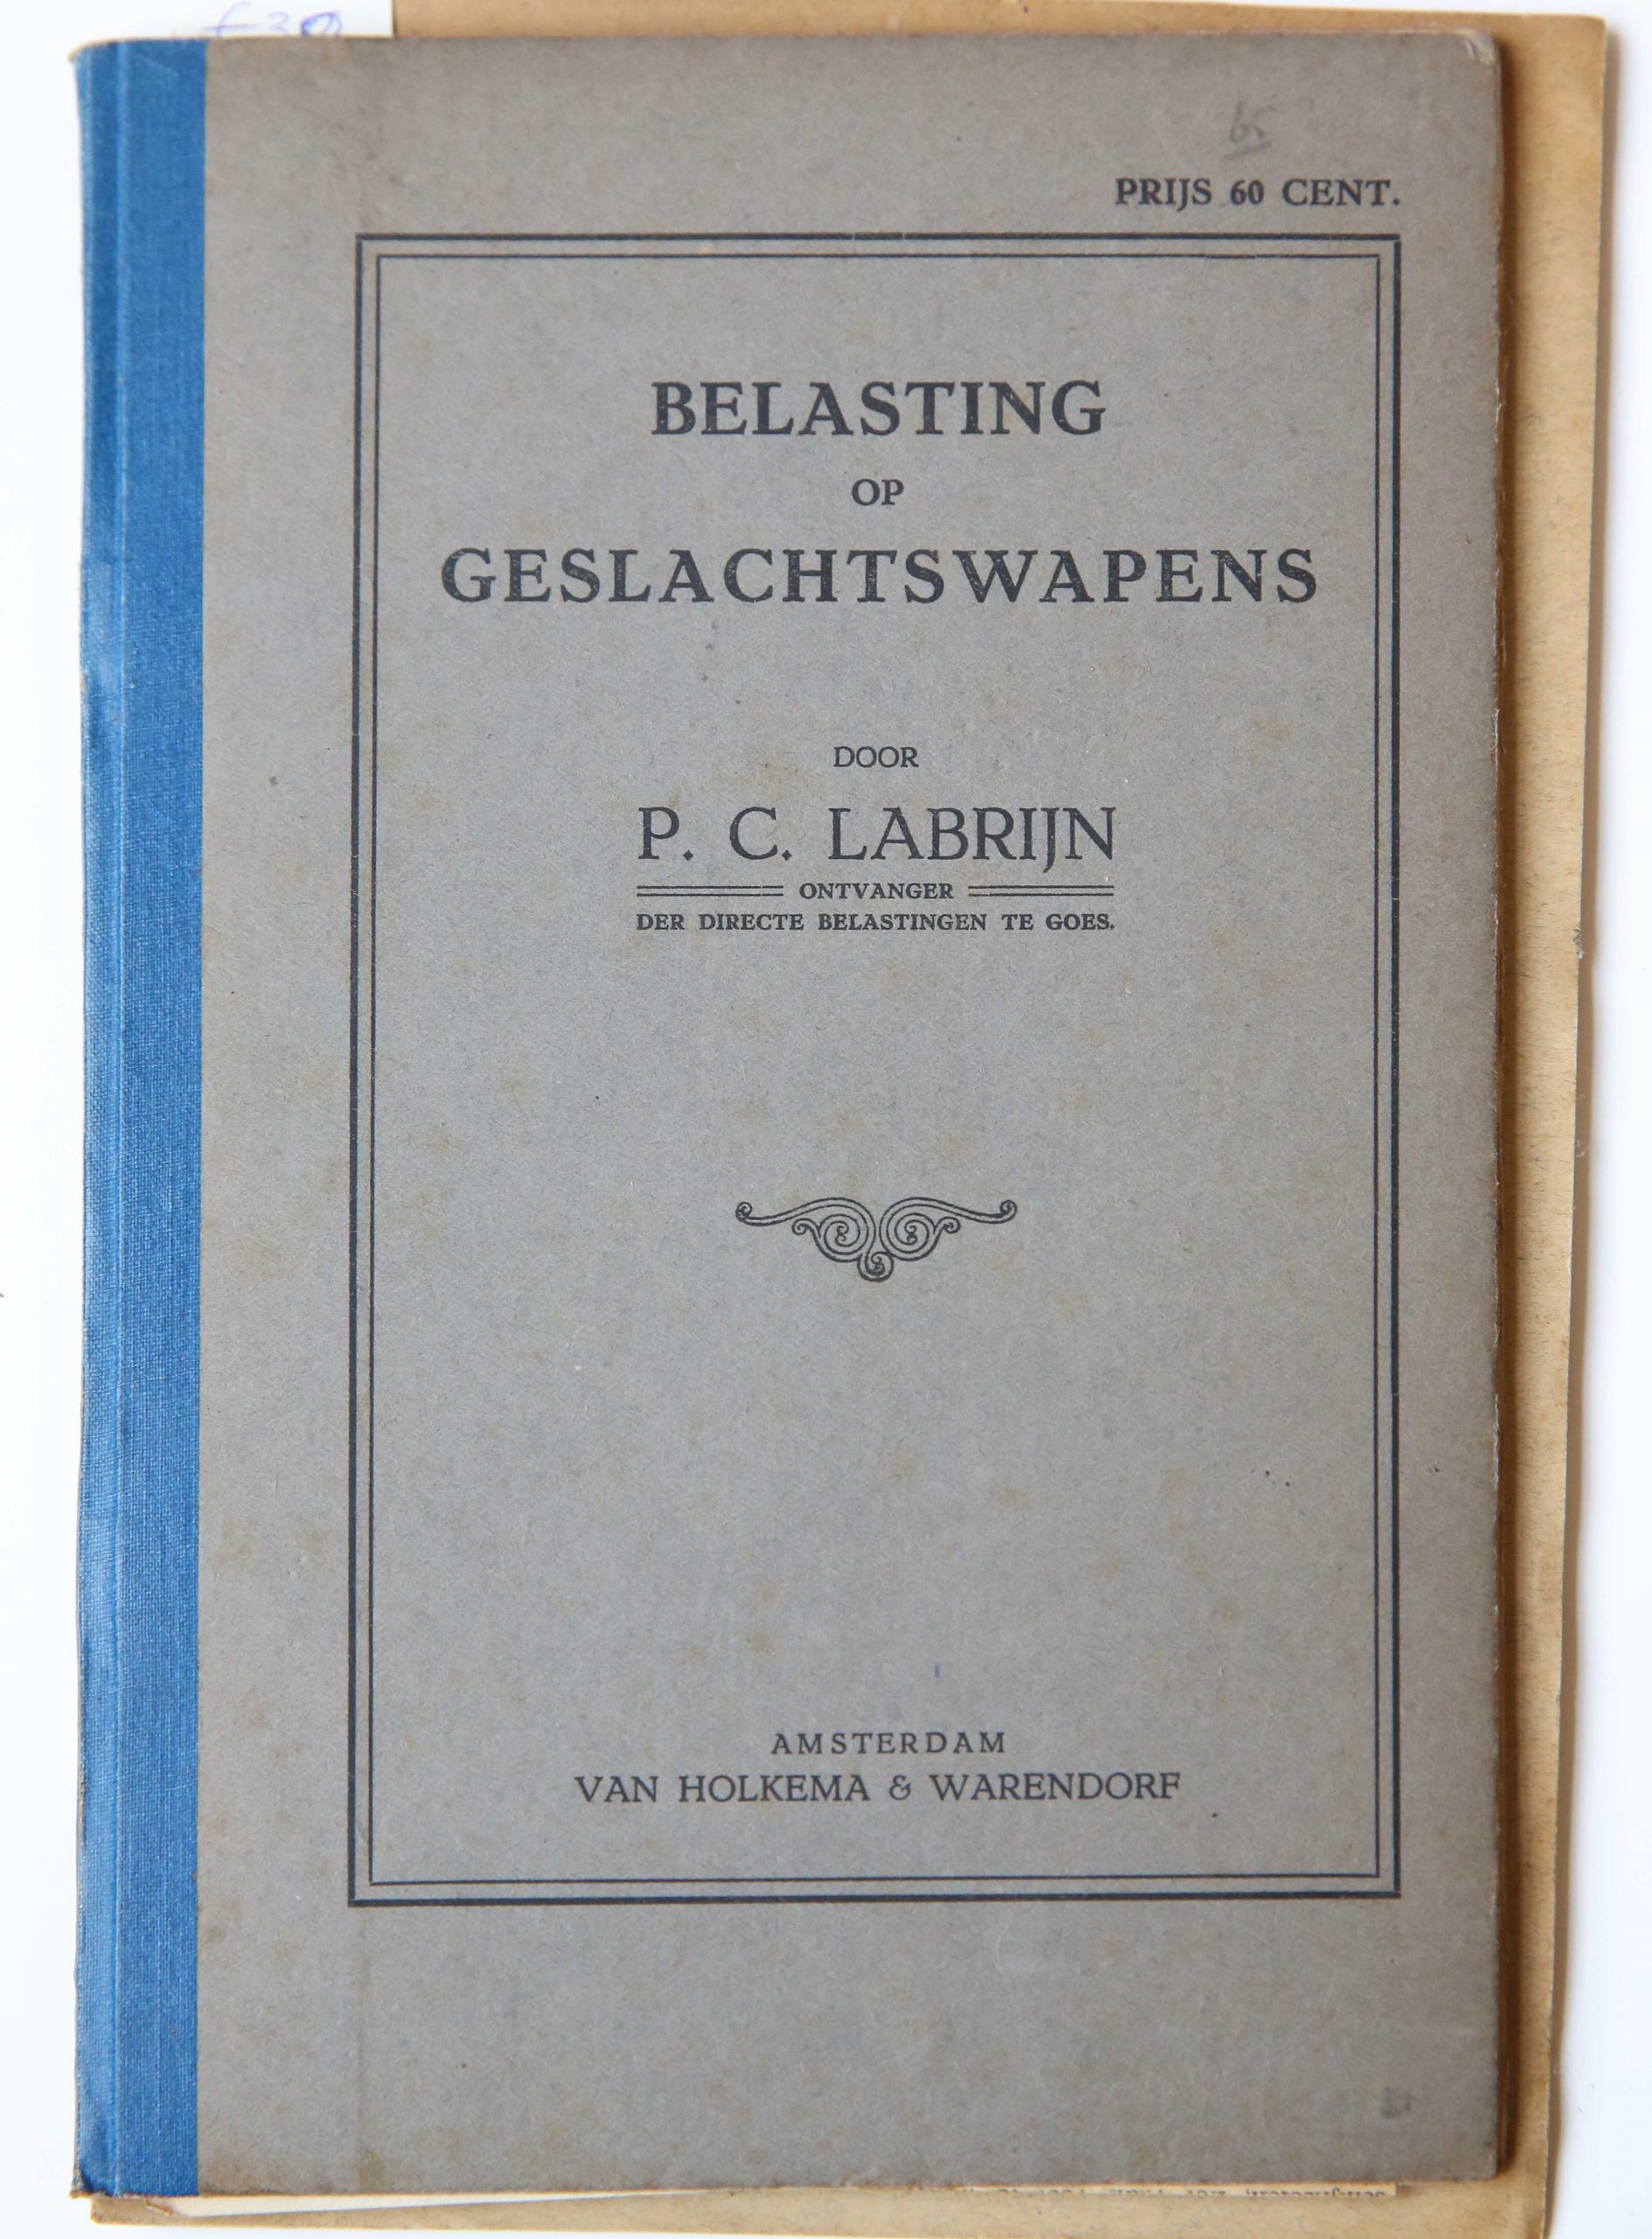 Belasting op geslachtswapens, Amsterdam Van Holkema & Warendorf, 1919, 32 pp.